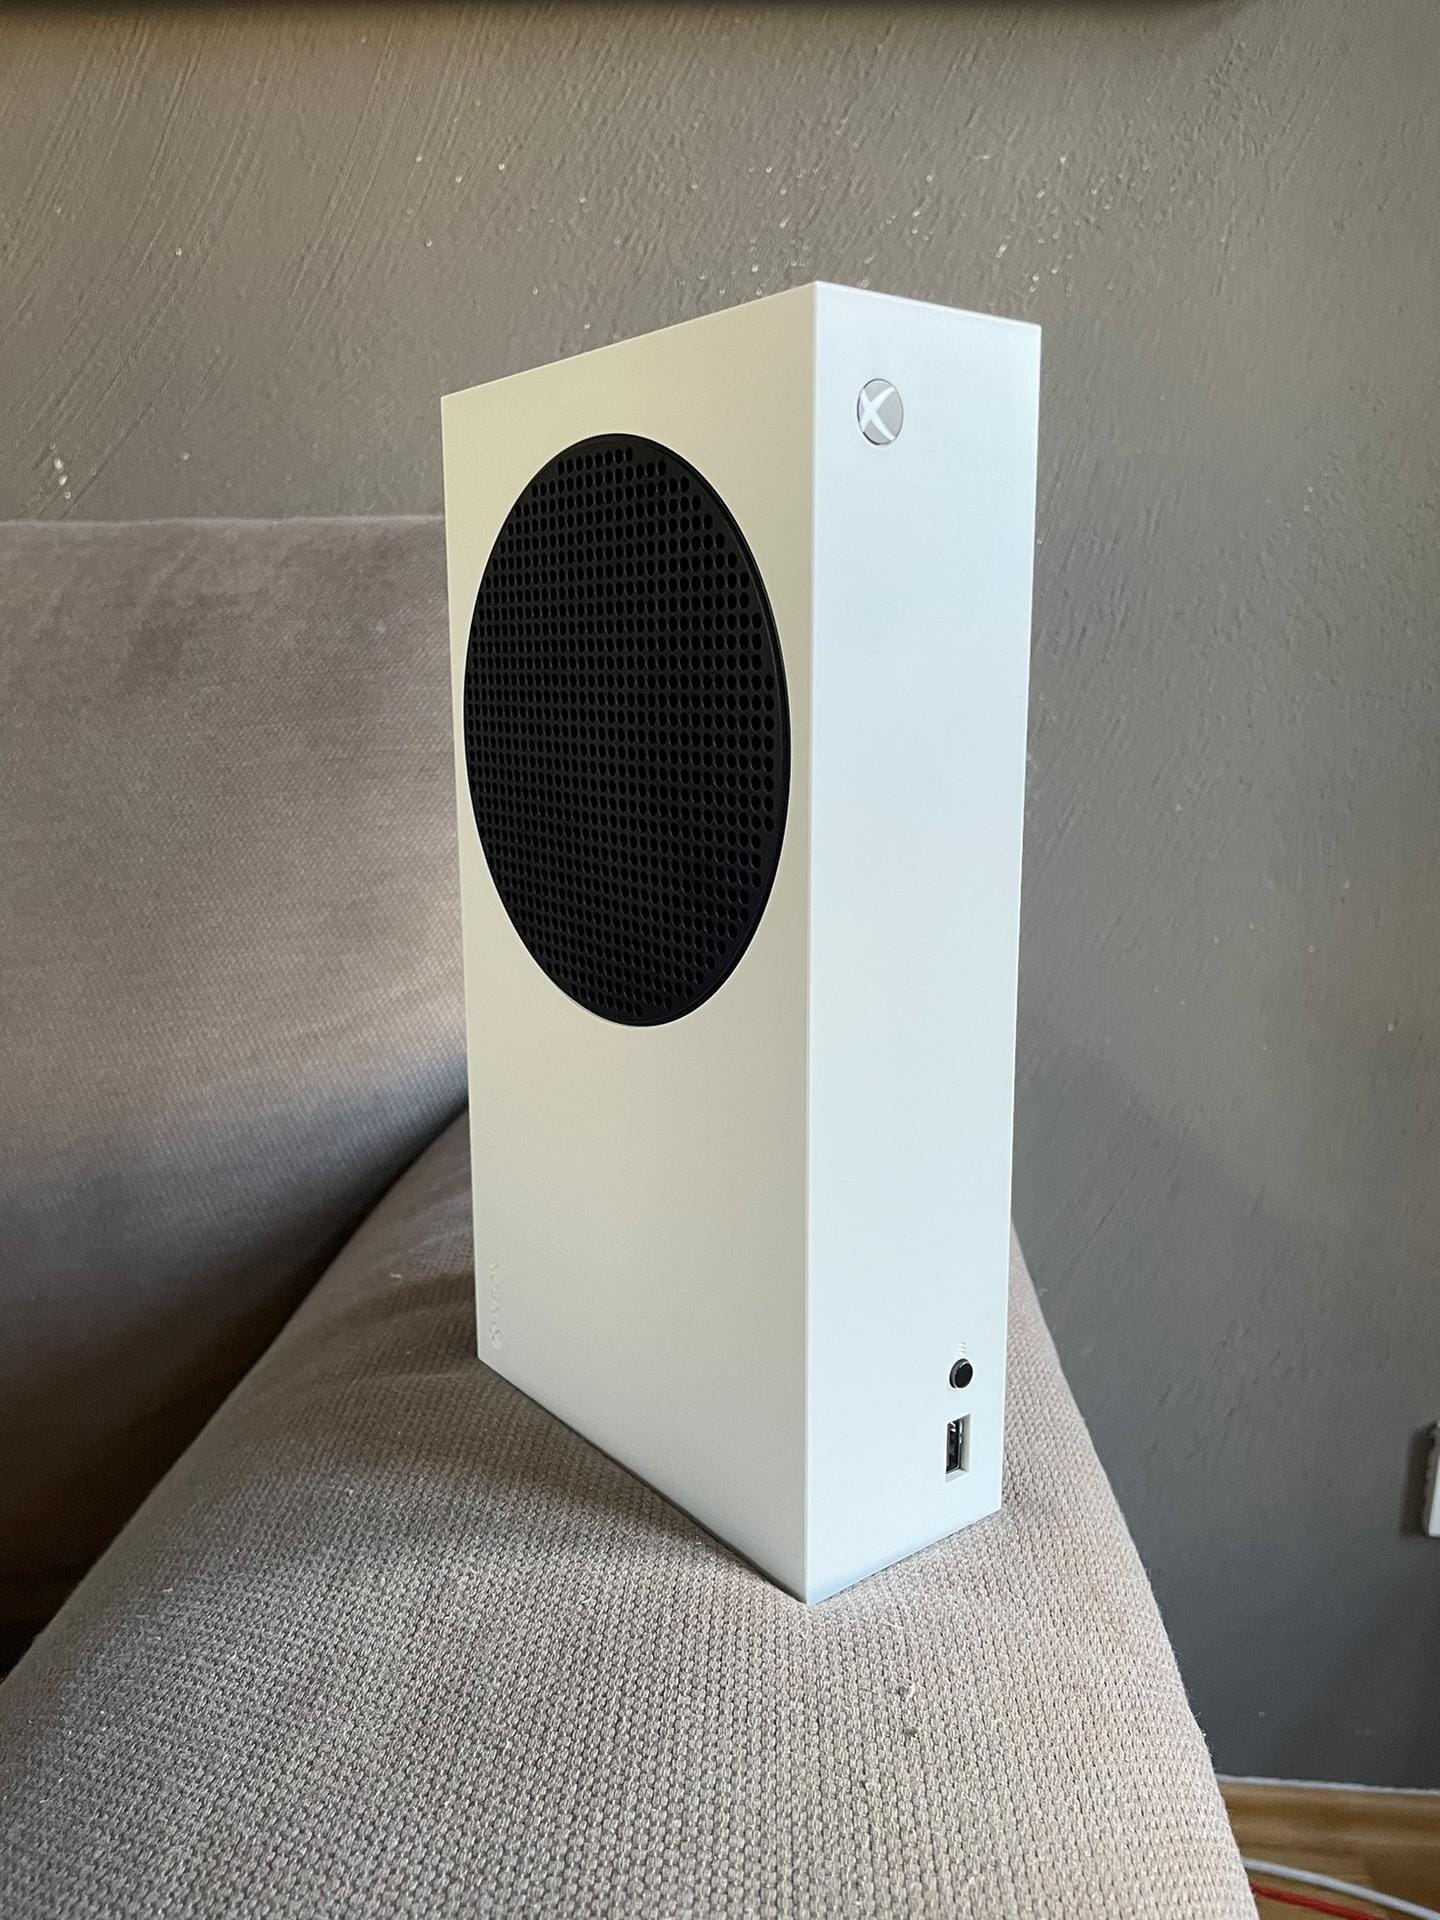 Die Xbox Series S kommt in Weiß gehalten.